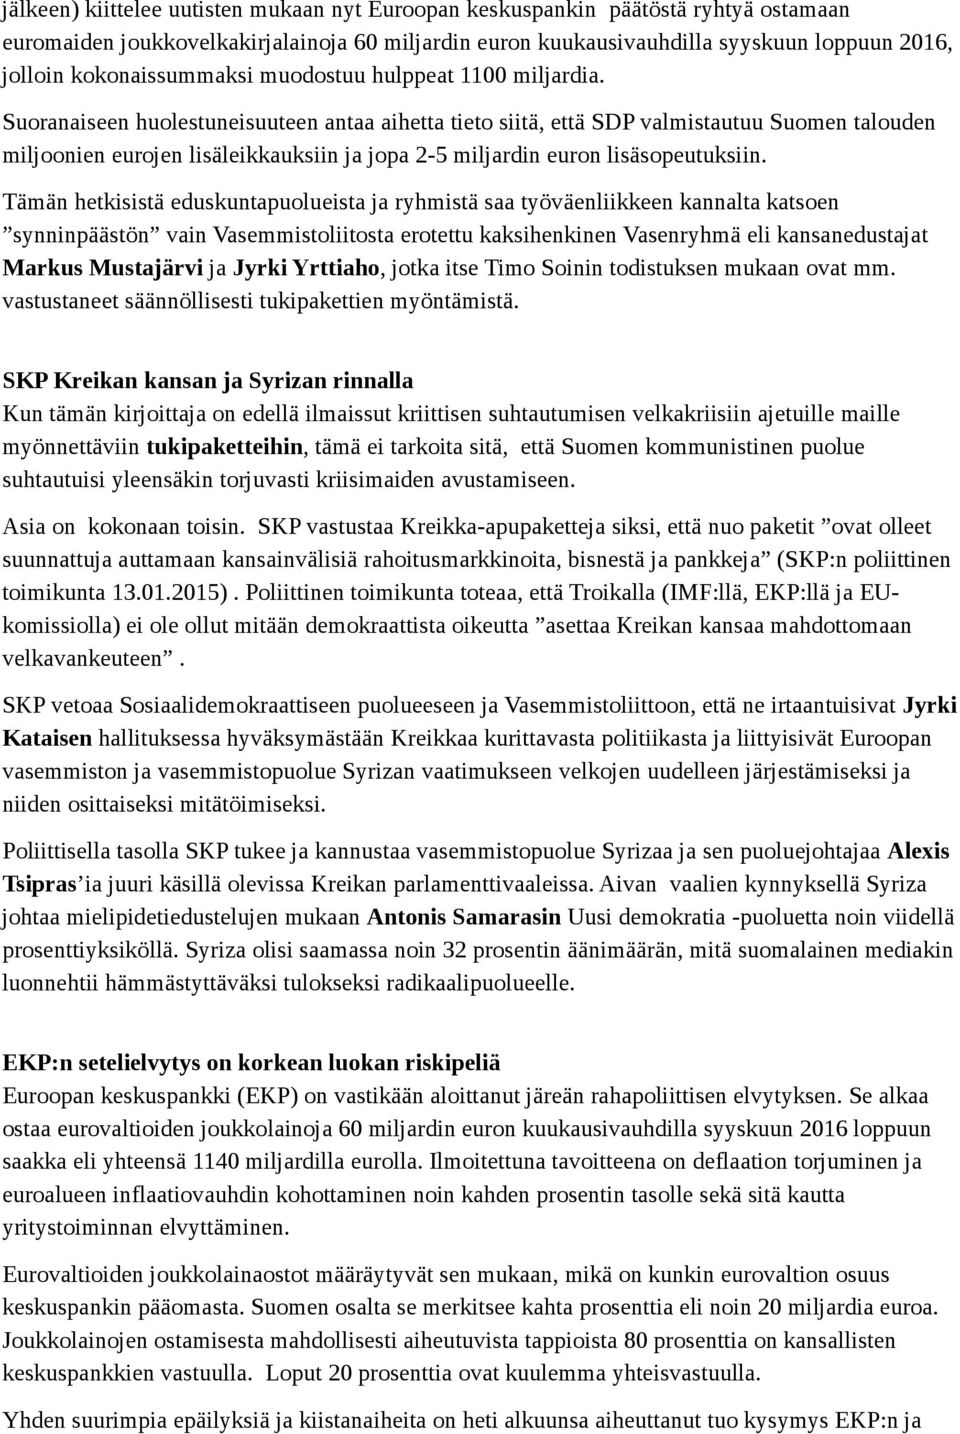 Suoranaiseen huolestuneisuuteen antaa aihetta tieto siitä, että SDP valmistautuu Suomen talouden miljoonien eurojen lisäleikkauksiin ja jopa 2-5 miljardin euron lisäsopeutuksiin.